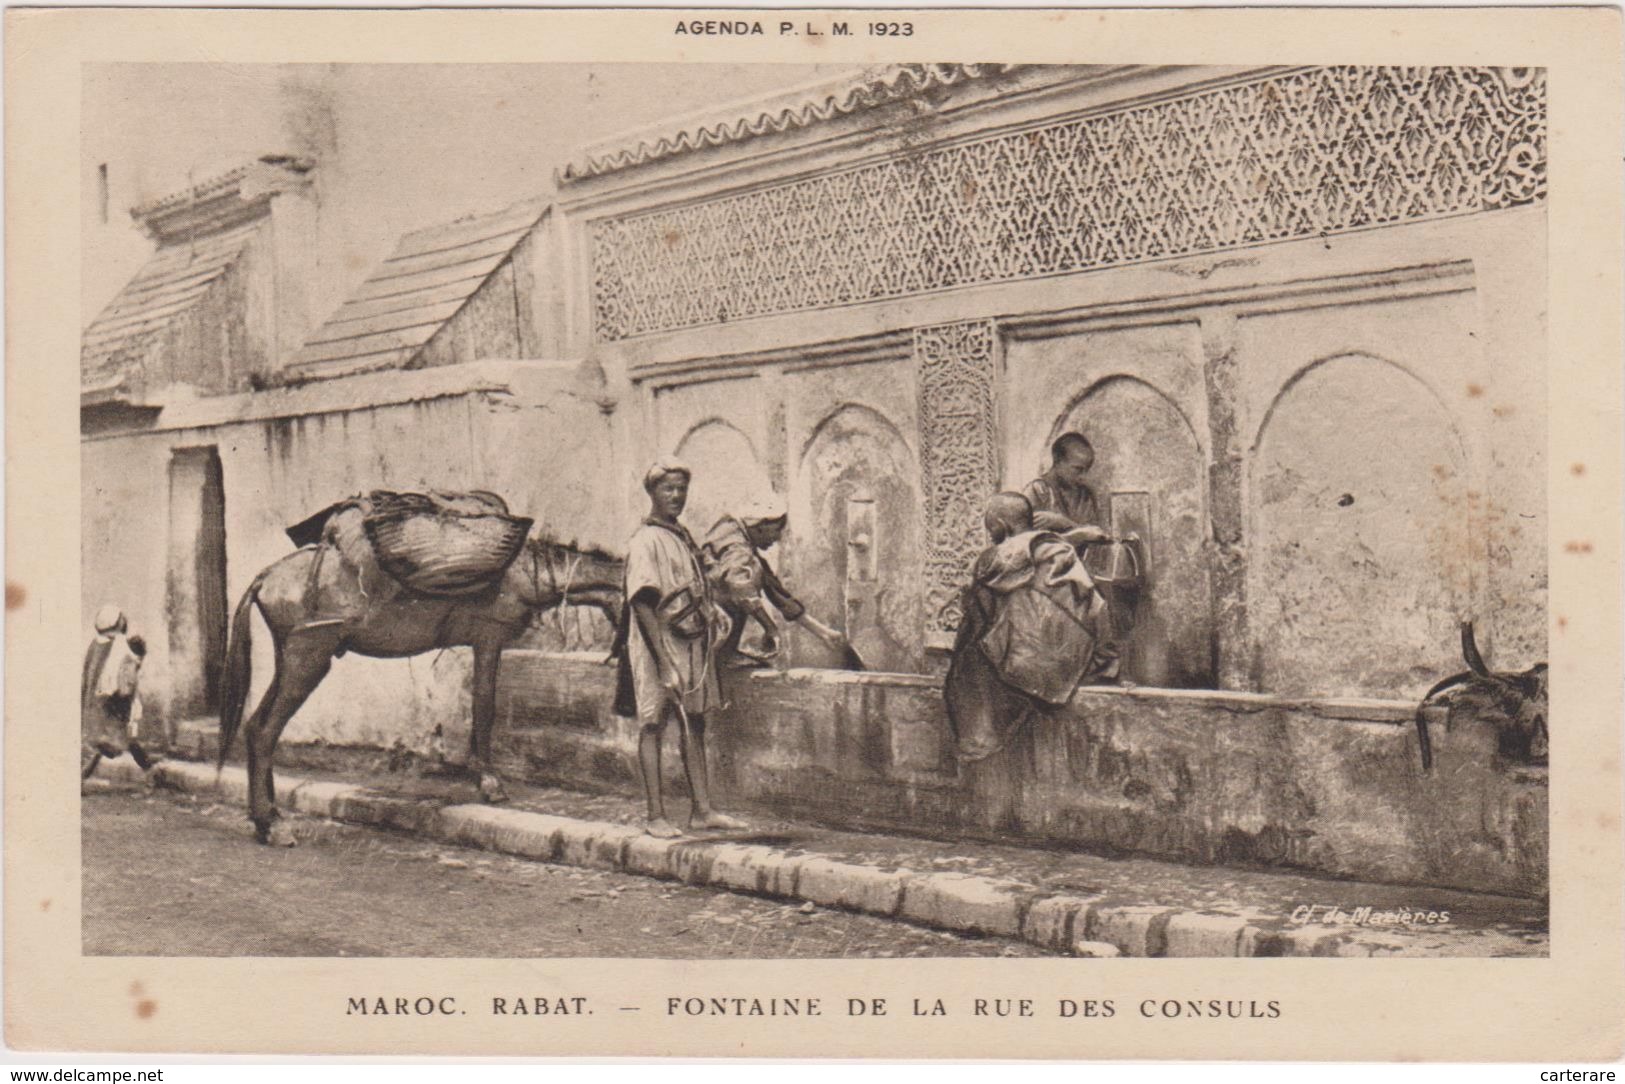 Afrique,MAROC,rabat,FONTA INE DE LA RUE DES CONSULS,agenda PLM 1923,et Barreau - Rabat